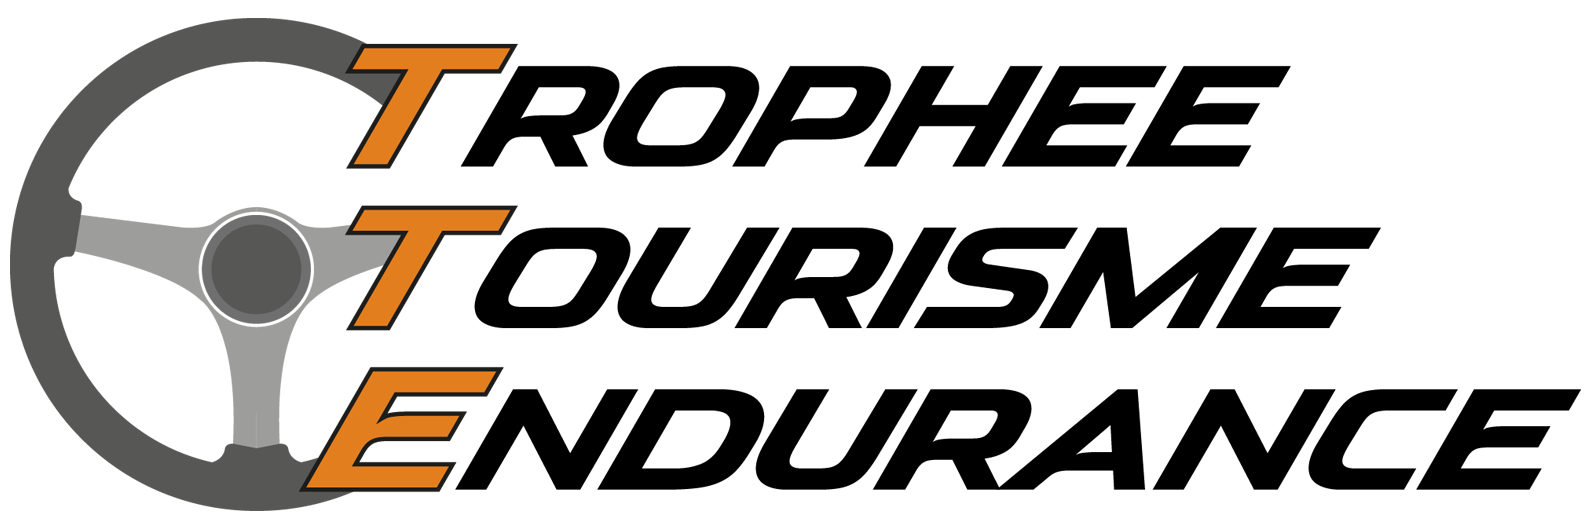 Logo Trophée Toruisme Endurance